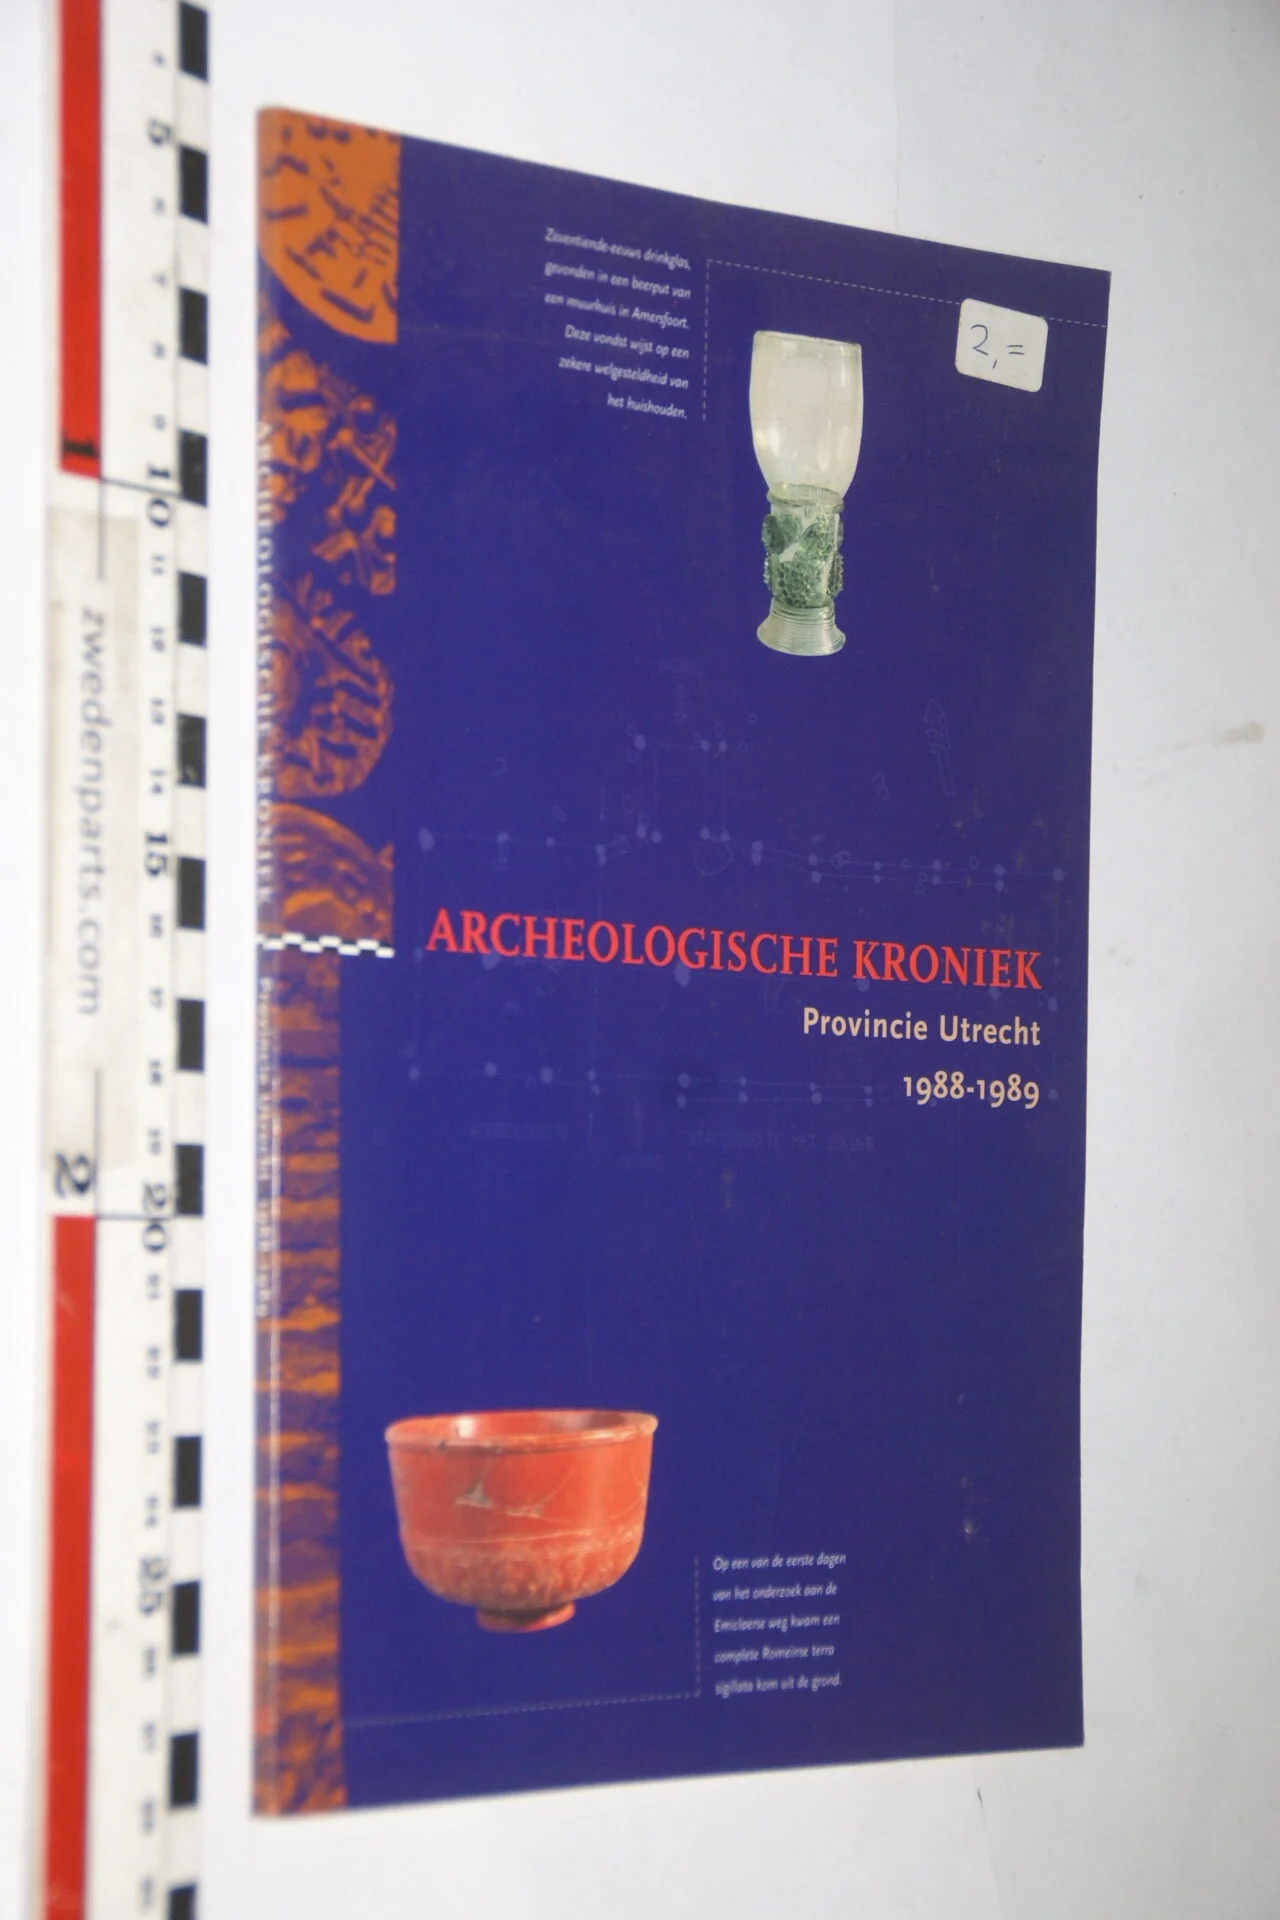 DSC03668 1988 boek Archeologische Kroniek provincie Utrecht-543a91b4